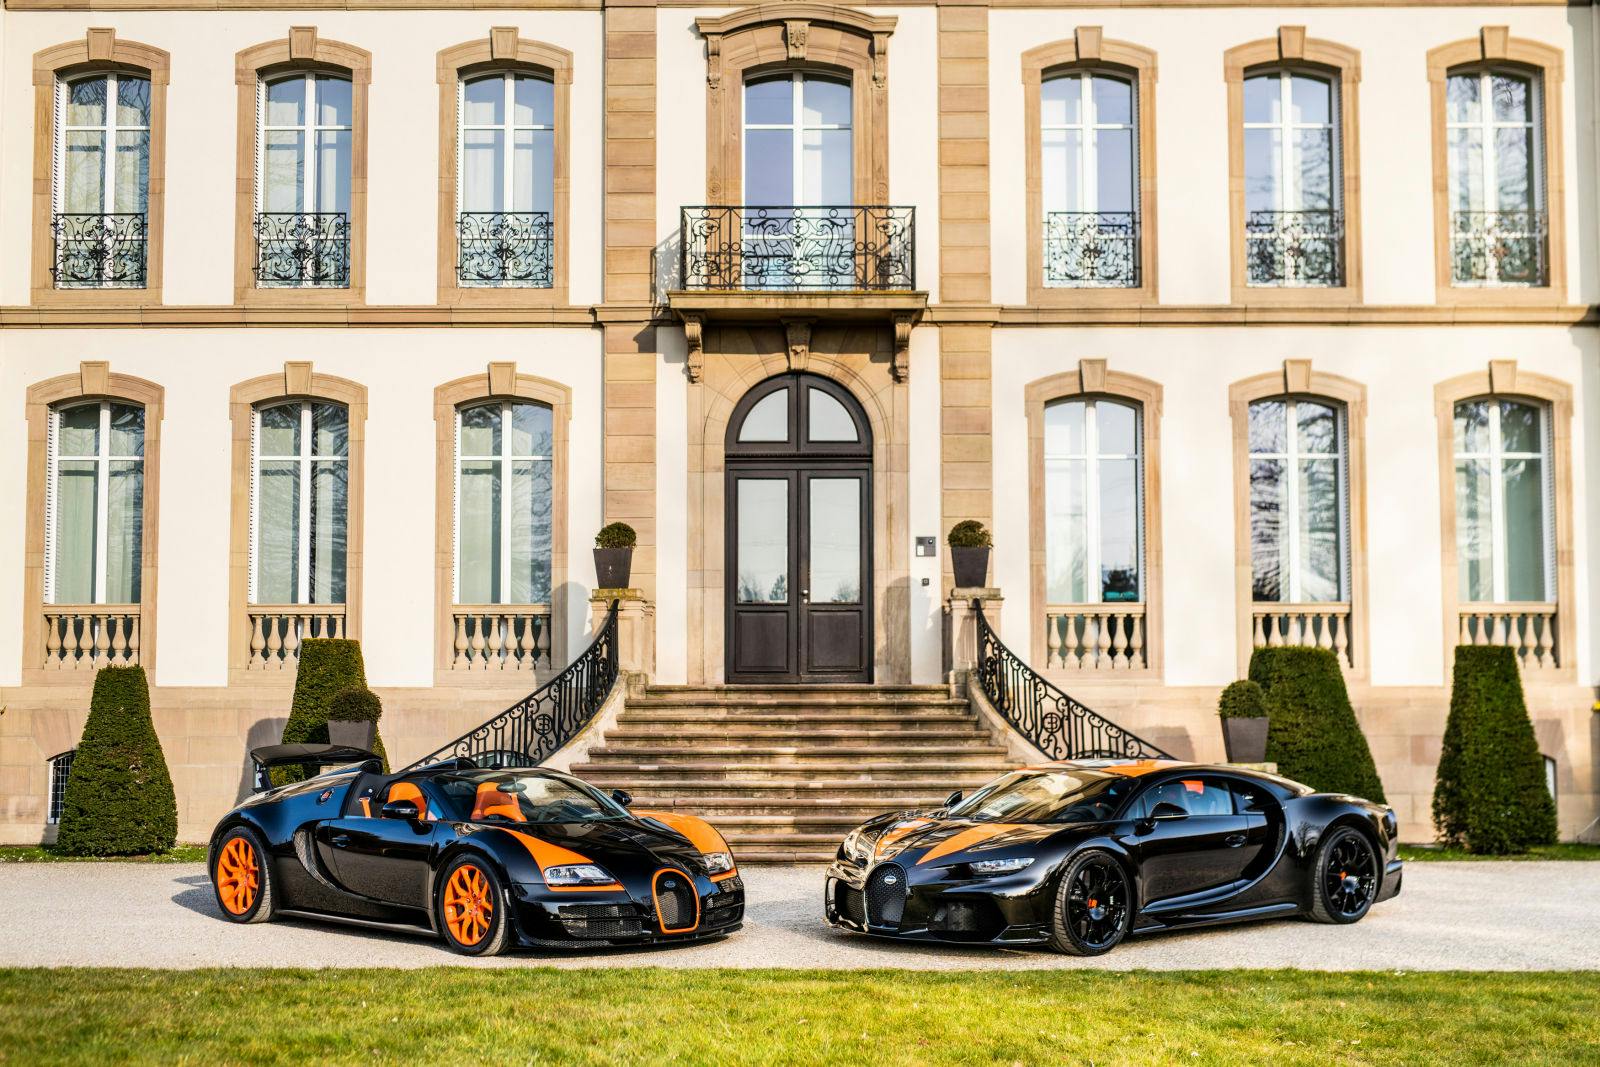 Une nouvelle Chiron Super Sport 300+ et une Veyron Grand Sport Vitesse World Record Edition certifiée par "La Maison Pur Sang" ont fait partie de l'expérience ultime de livraison créée récemment par Bugatti.